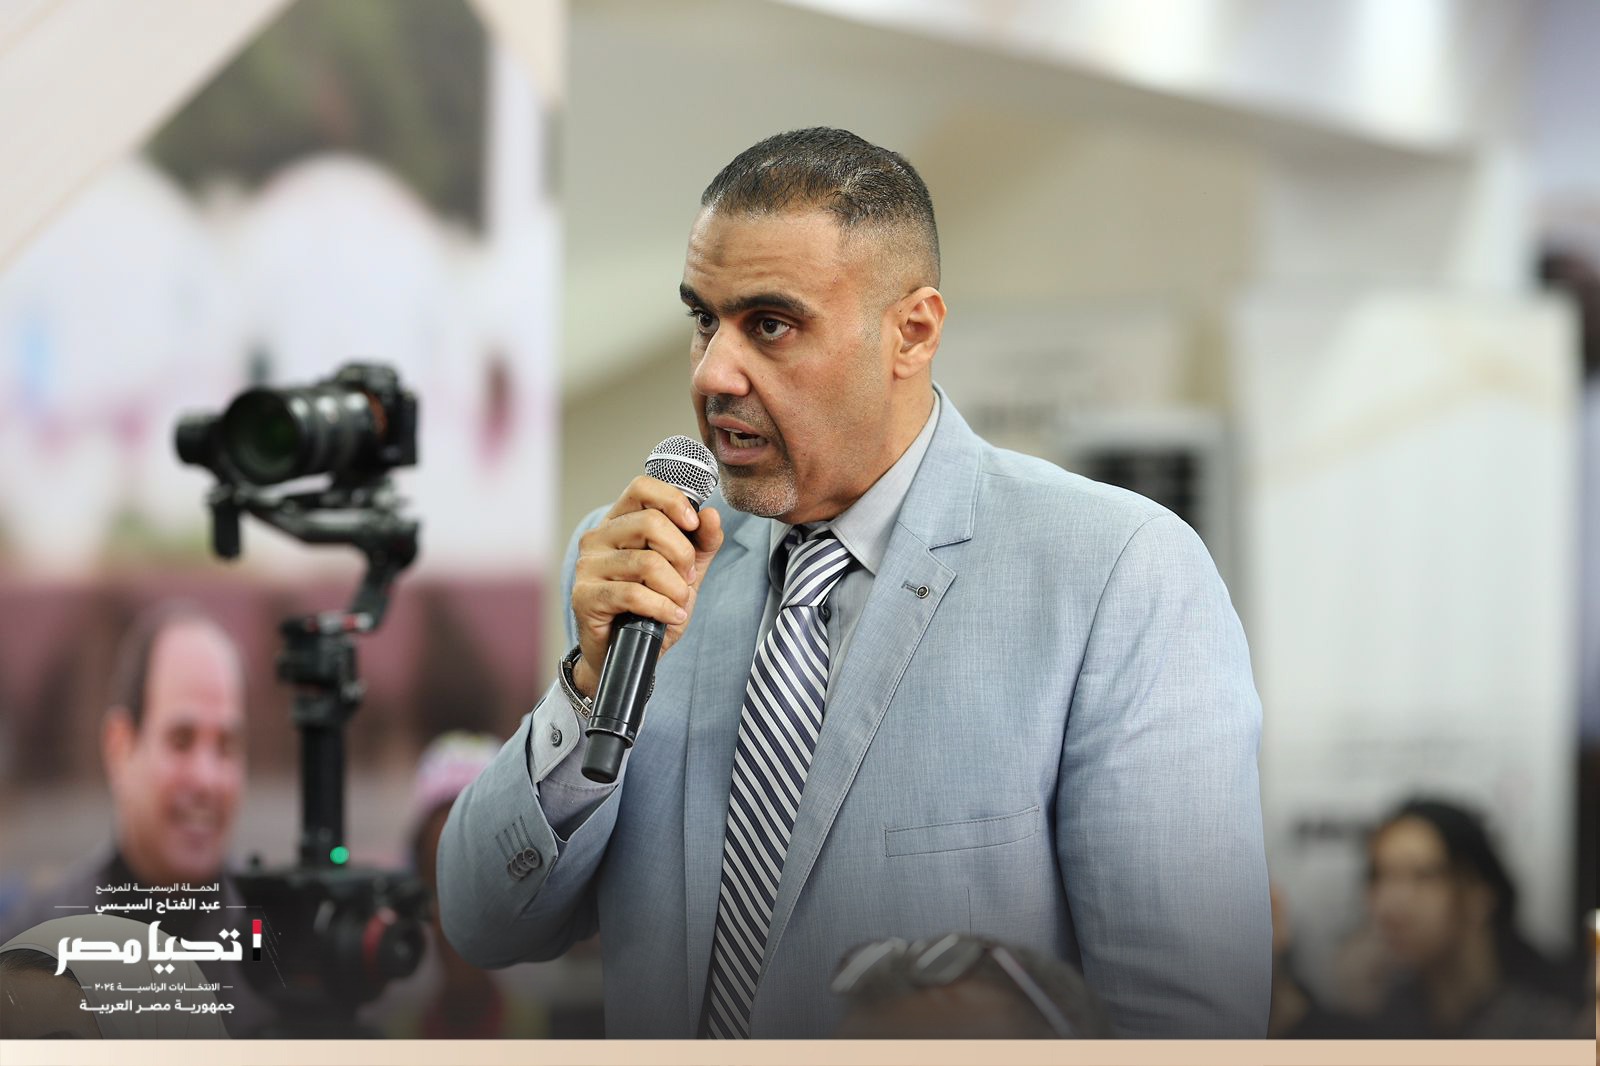 الرسمية للمرشح عبد الفتاح السيسي تستقبل وفد نقابة العاملين بالزراعة والري والصيد واستصلاح الأراضي (10)